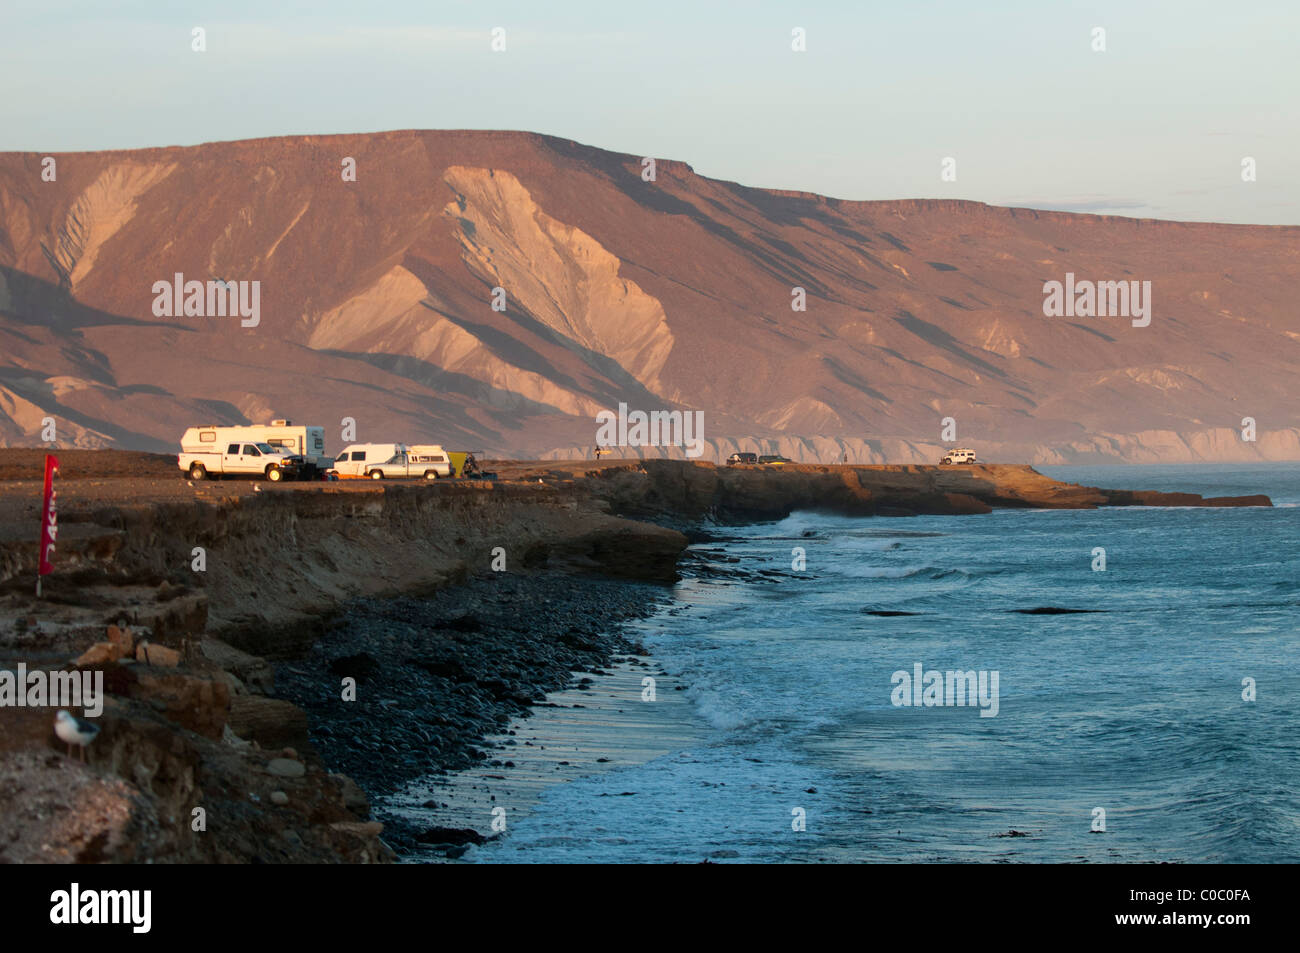 Camping along the shoreline at Punto San Carlos, Baja California Norte, Mexico Stock Photo